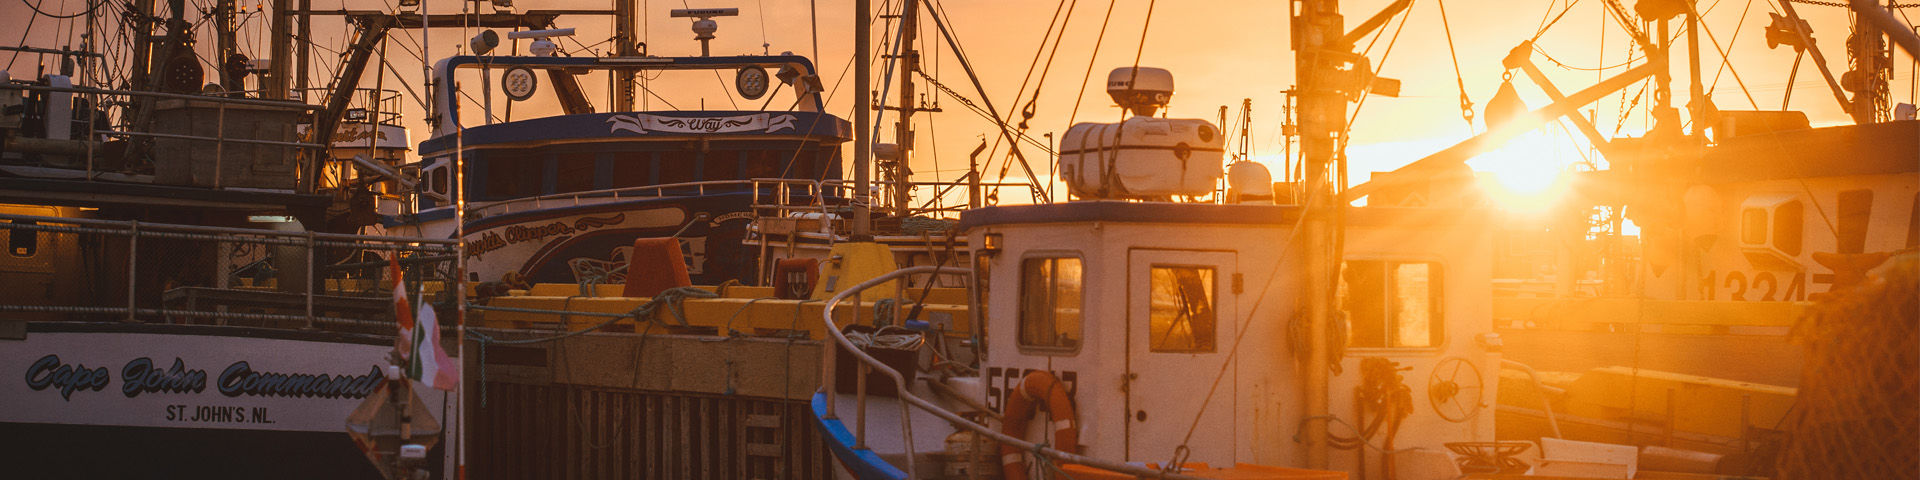 close-up of fishing boats at sunset